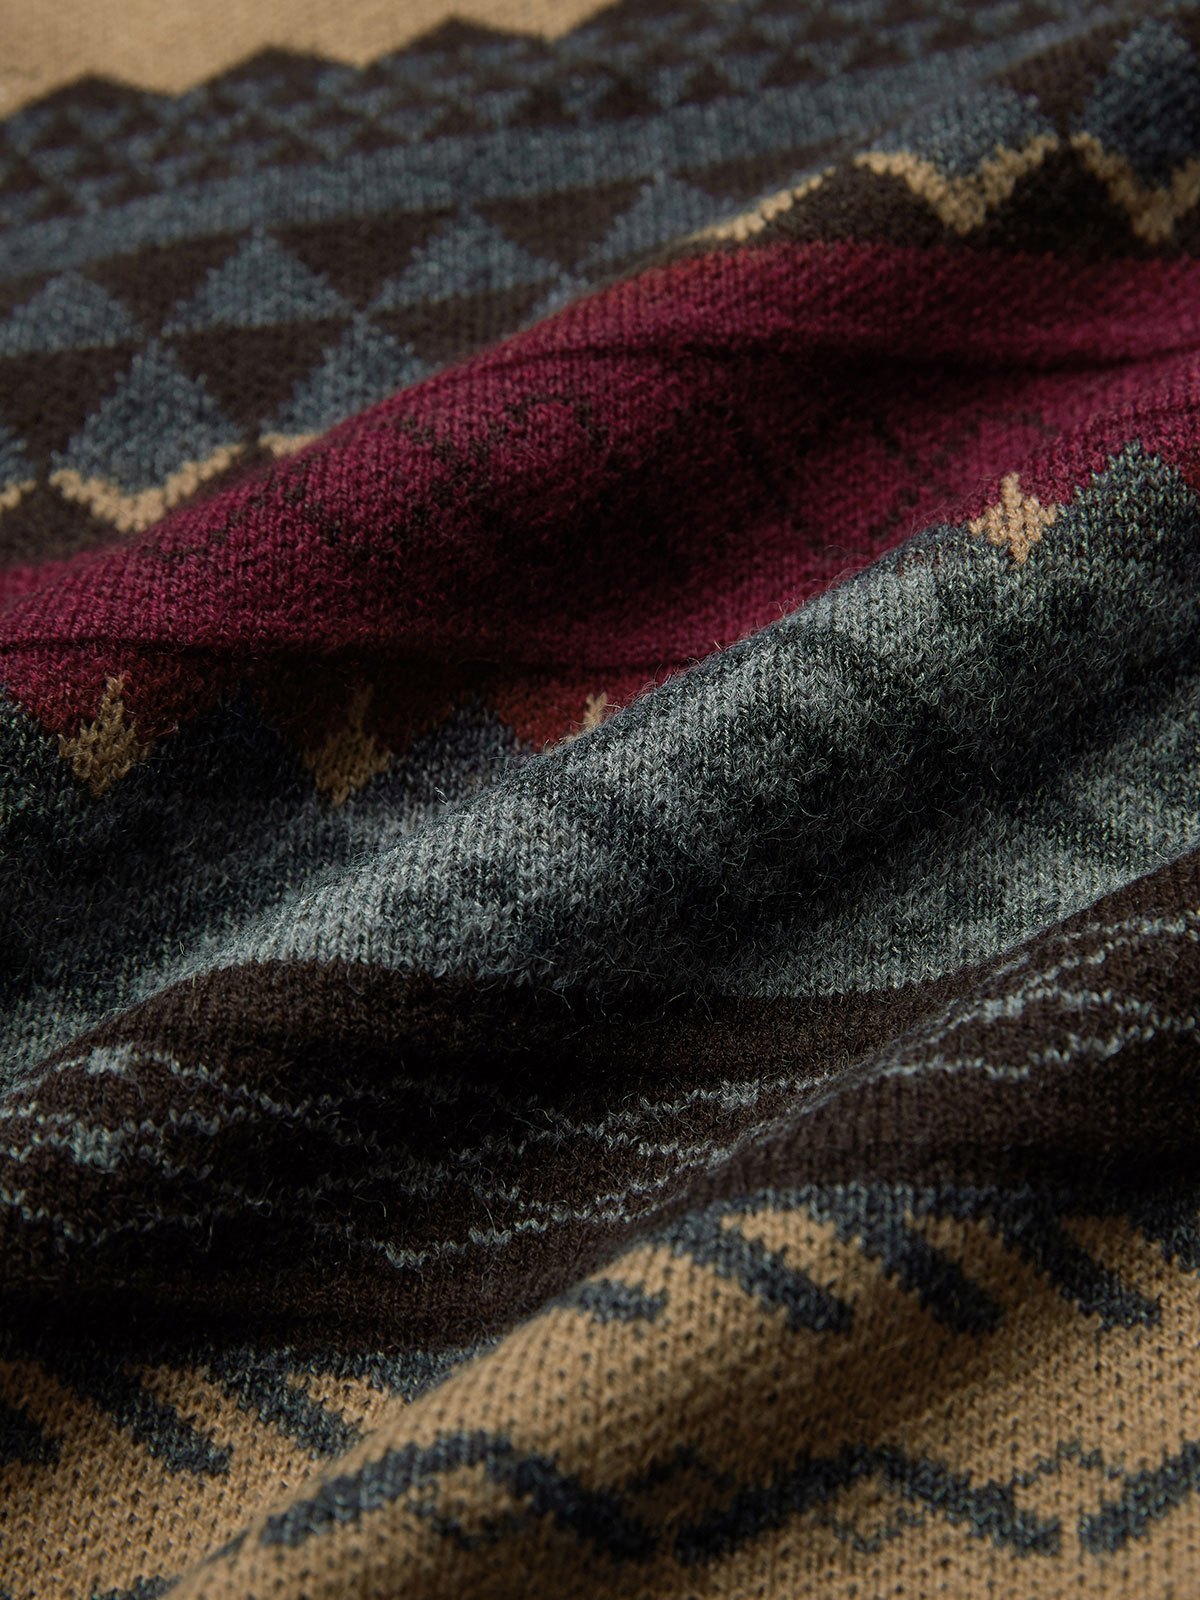 Vintage Oversize Jacquard Strickpullover Sweater